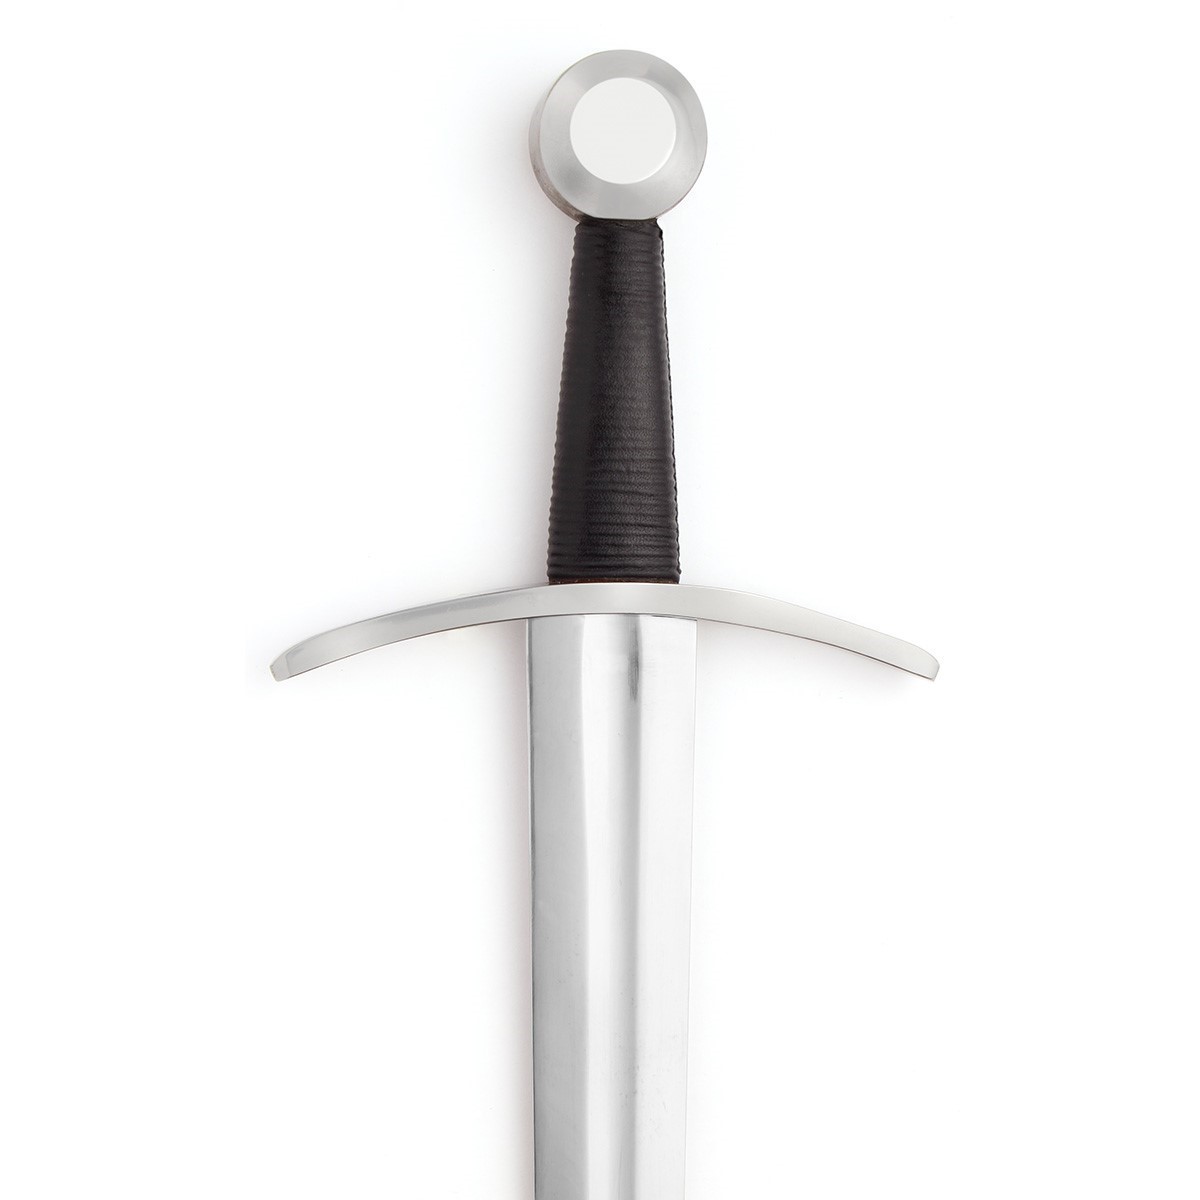 European One Handed Medieval Sword